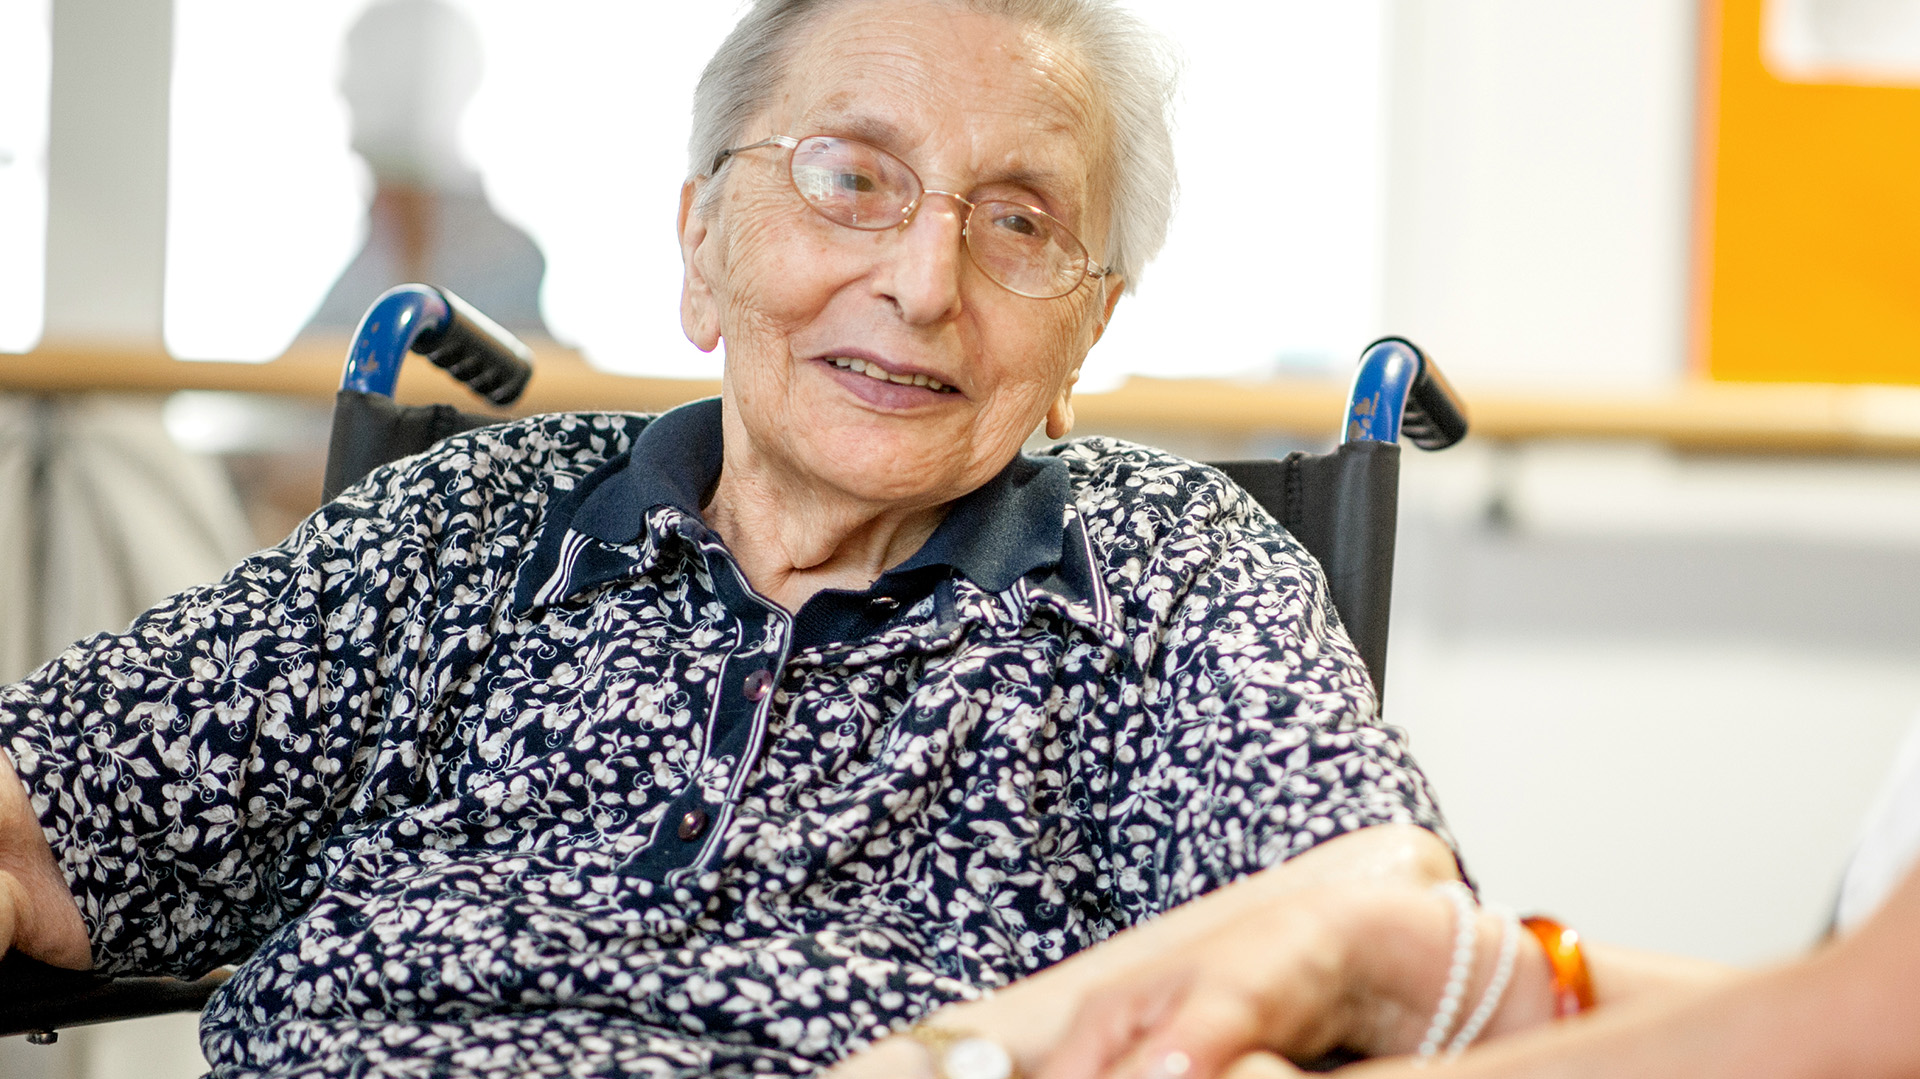 El estudio en Dinamarca reafirma la necesidad de que las personas con Parkinson se mantengan en buen estado de salud, incluyendo la prevención del COVID-19 (Getty Images)